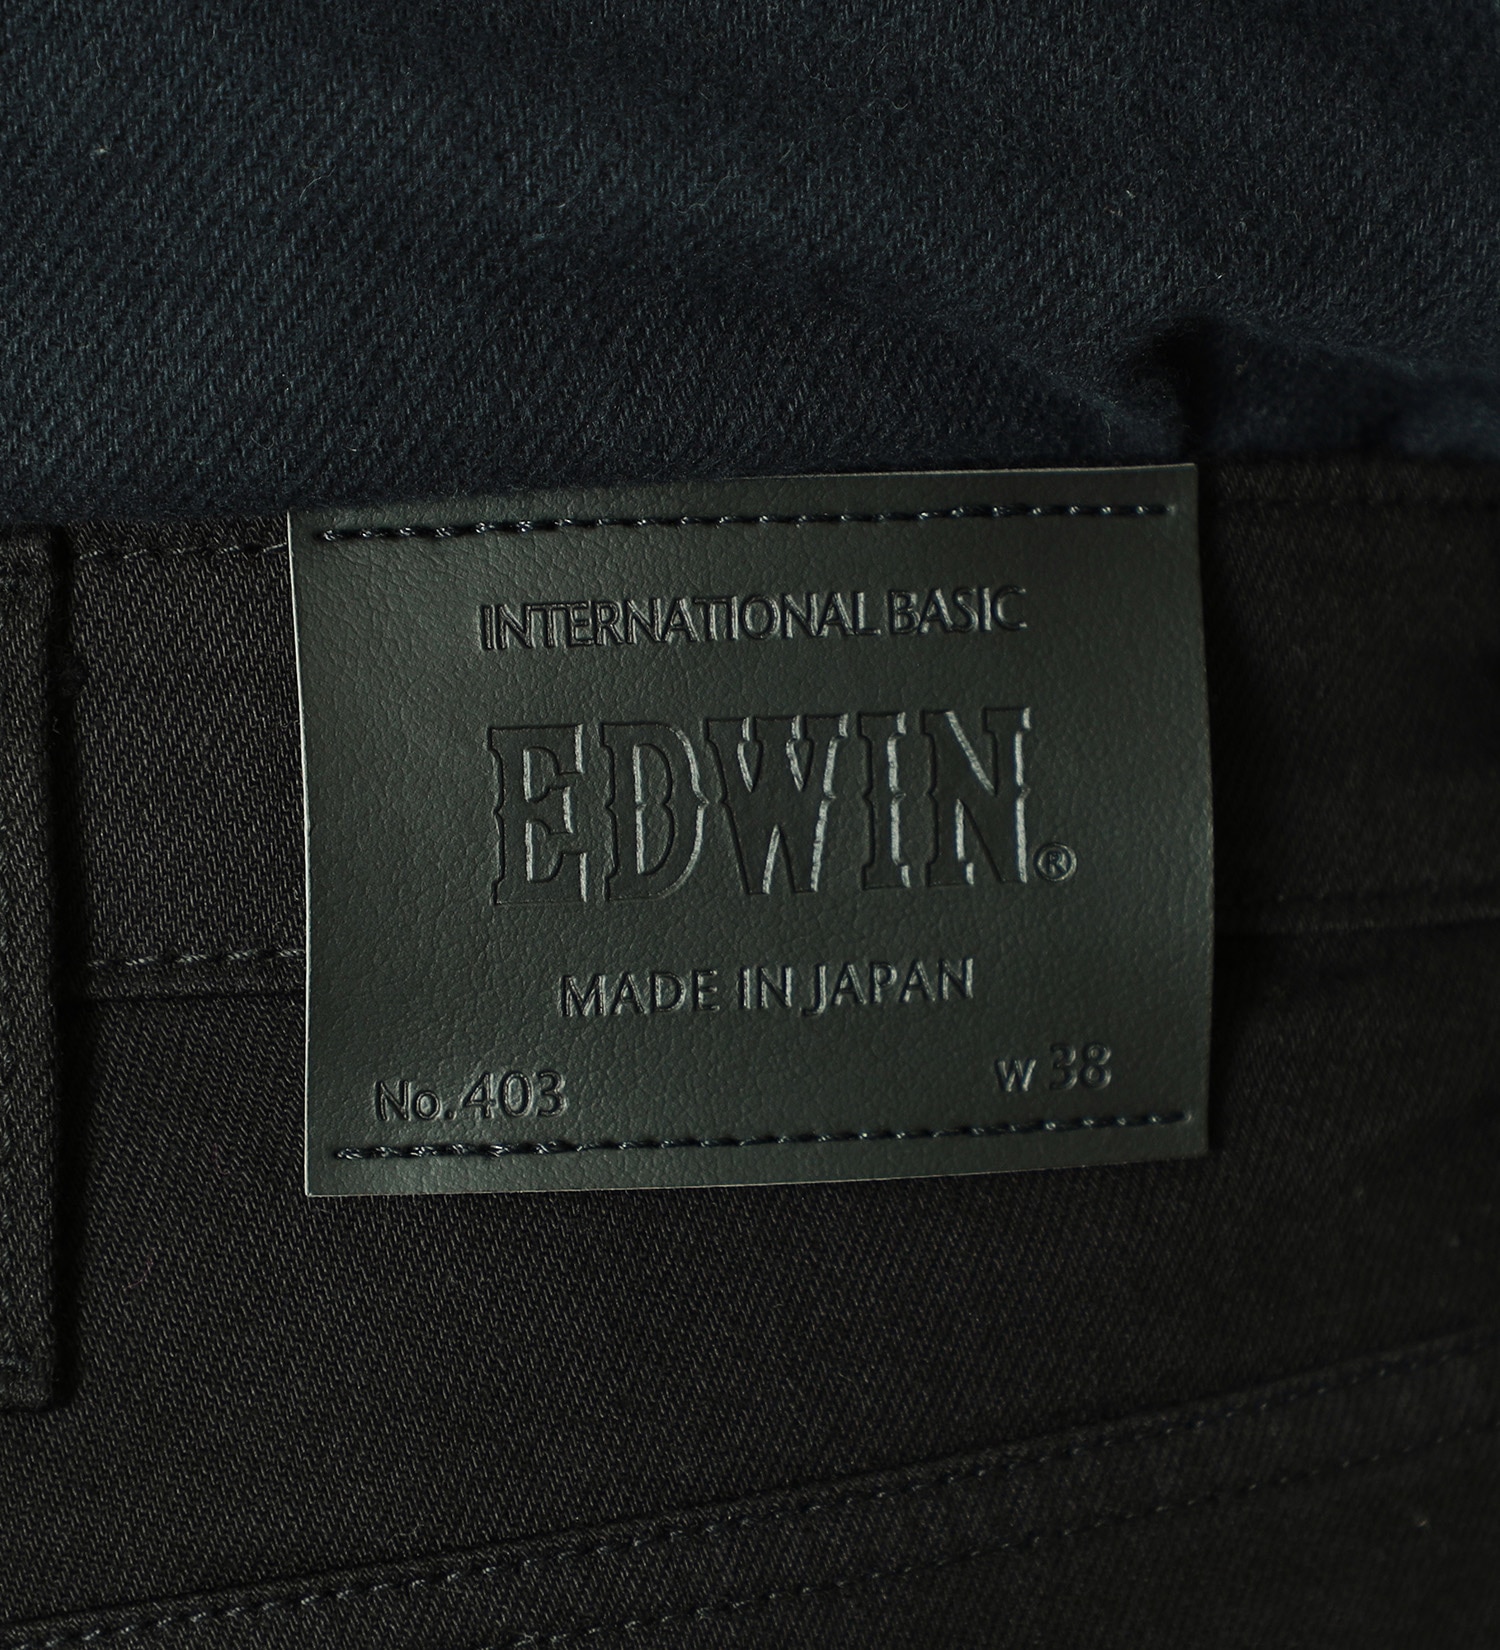 EDWIN(エドウイン)の【試着対象】【大きいサイズ】インターナショナルベーシック 403 フレックス ふつうのストレート|パンツ/パンツ/メンズ|ブラック